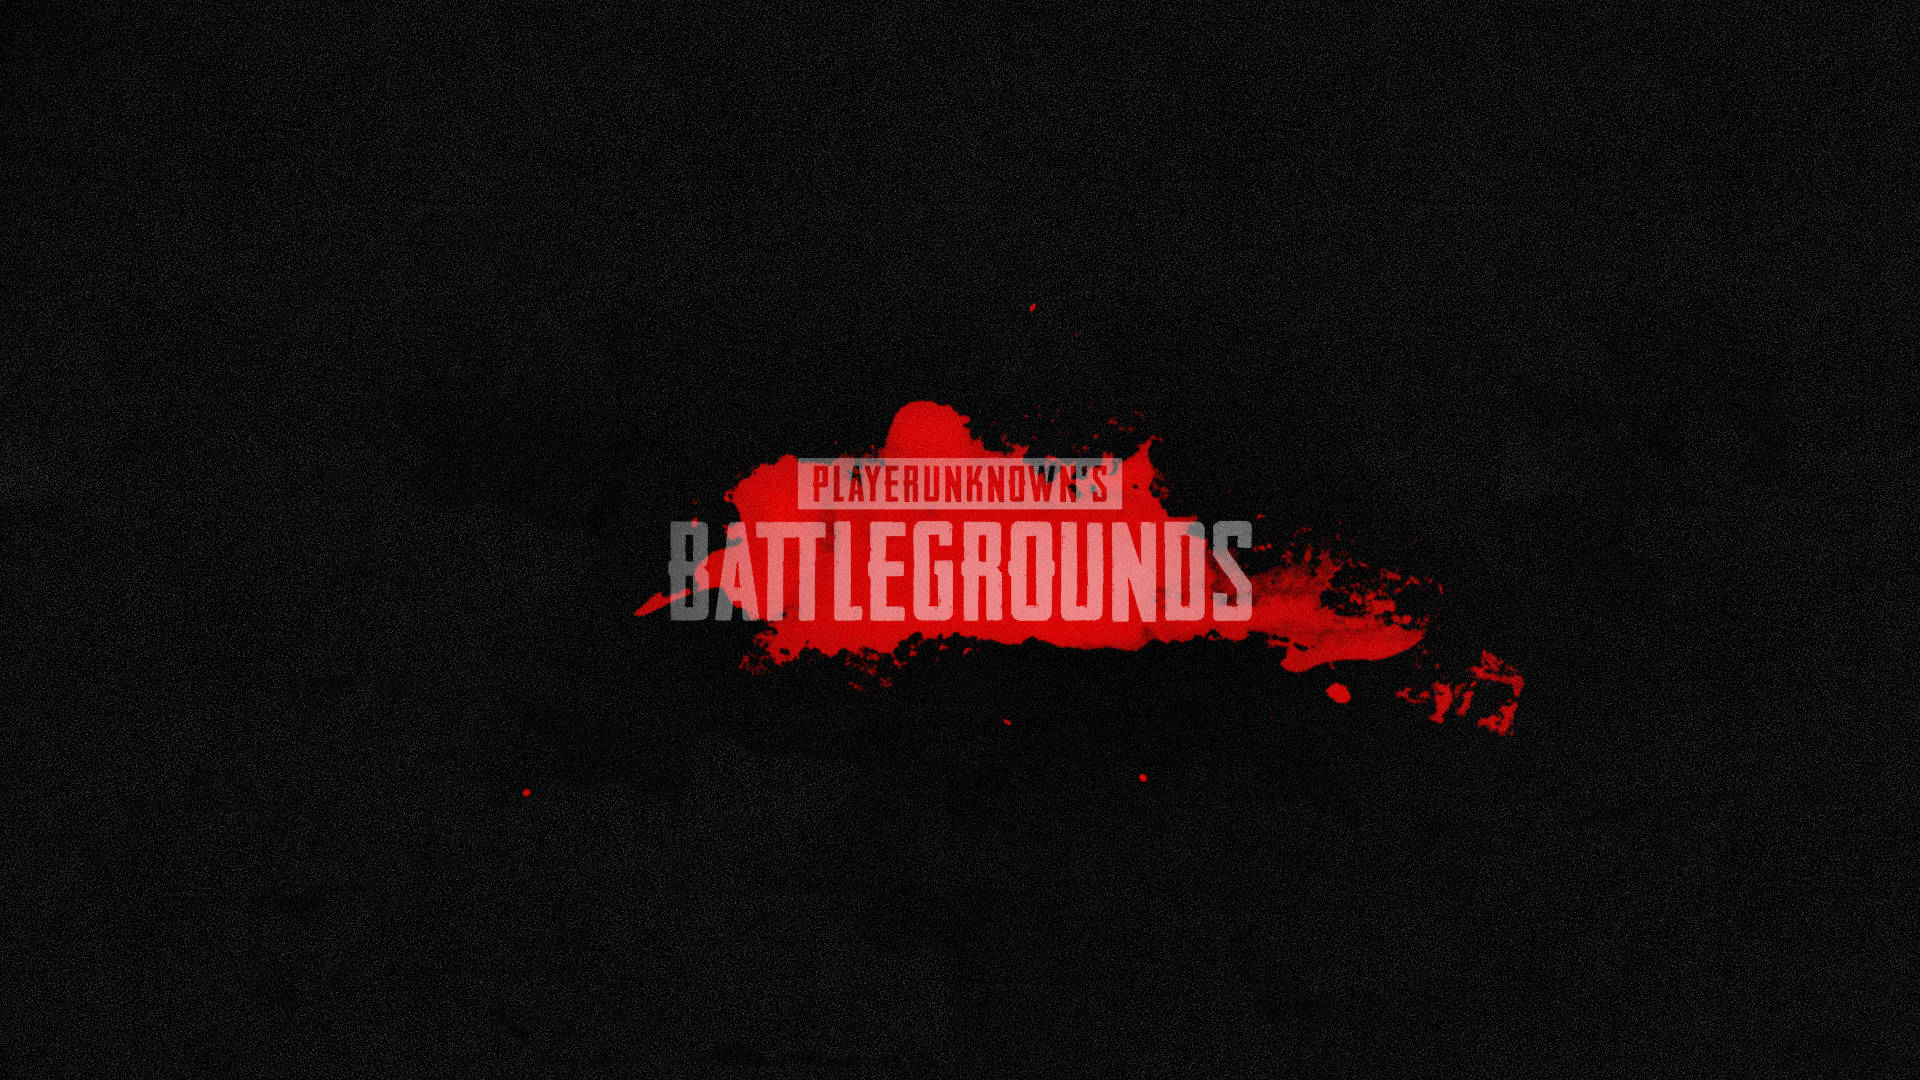 Playerunknown'sbattlegrounds-logo In Schwarz Wallpaper